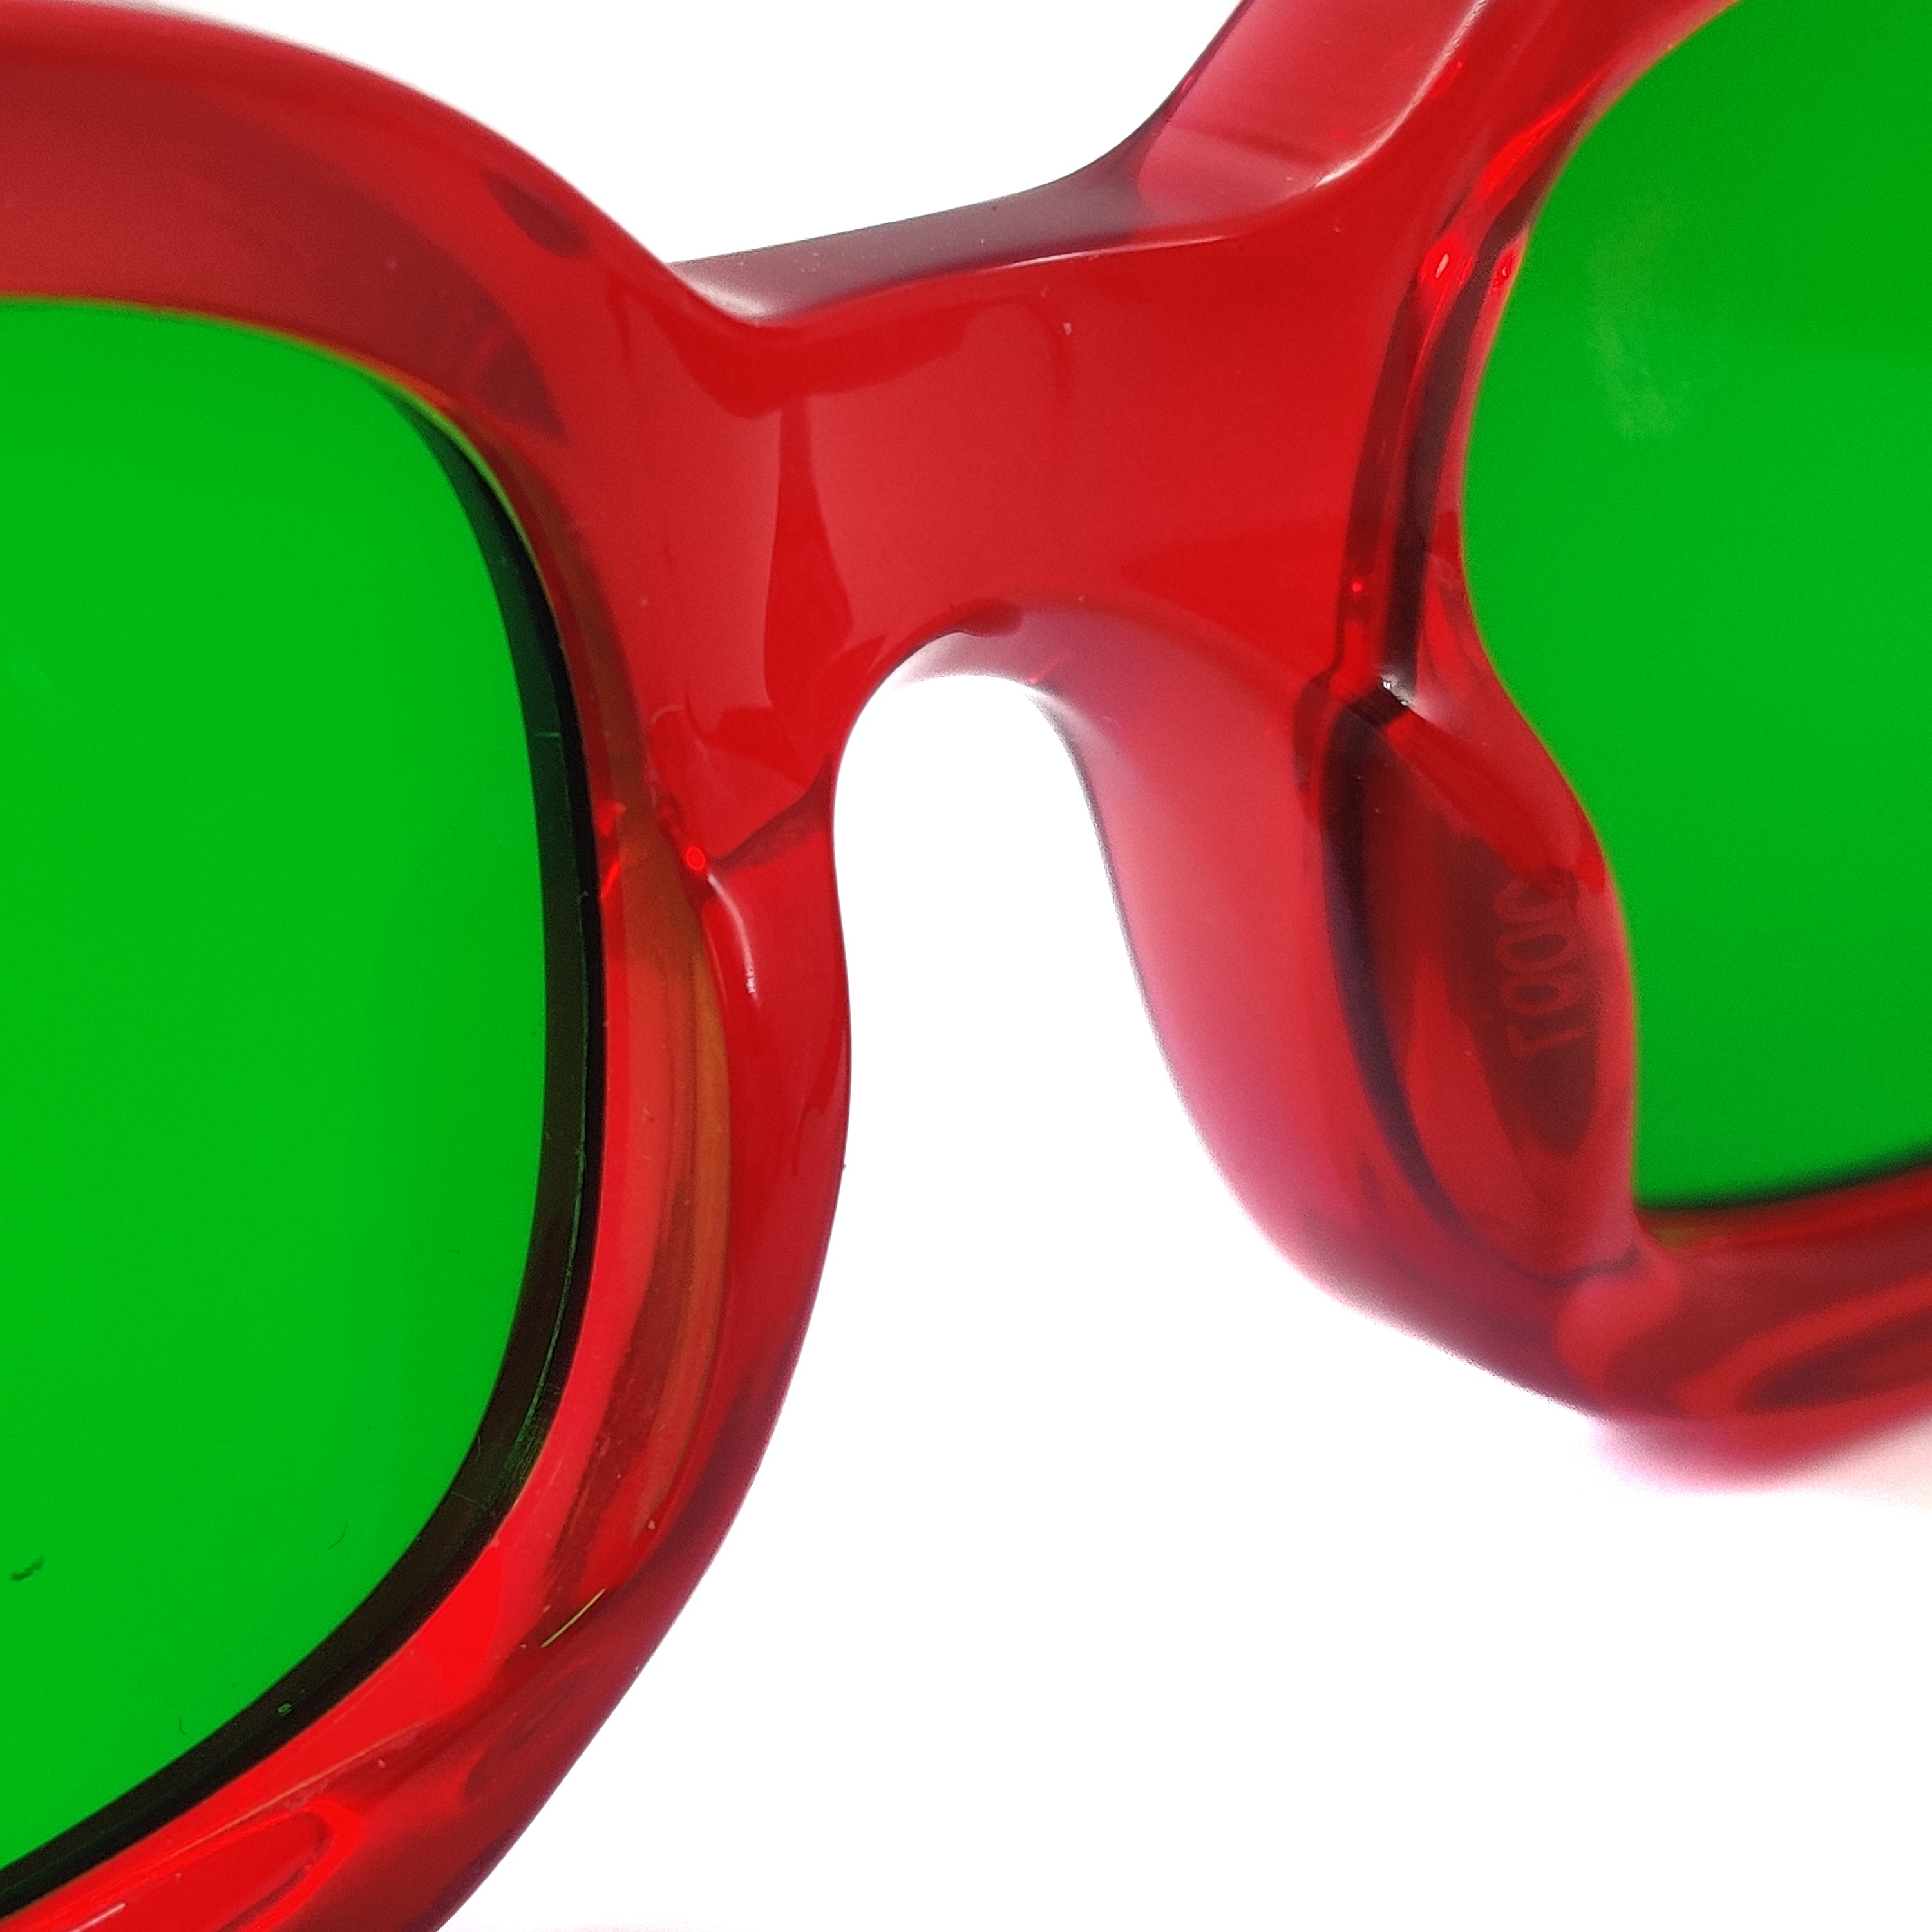 Gafas de sol de mujer con montura de acetato rojo Proveedores de gafas de sol de marca personalizadas